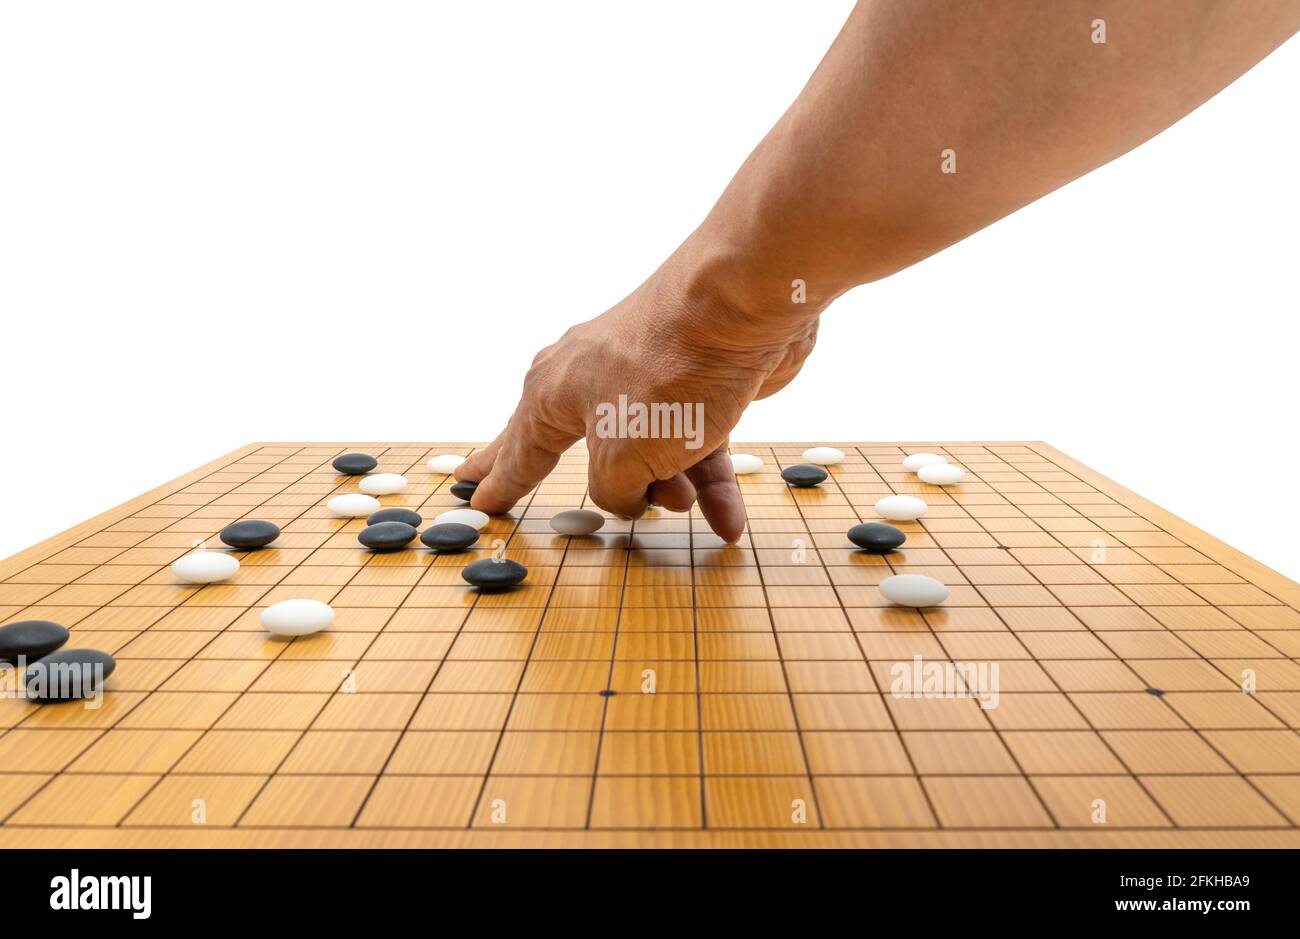 Hand spielen Brettspiel von Go oder japanischen Schach-Brettspiel, verwenden Sie schwarze Steine und weiße Steine, um Gebiet zu schaffen und Gegner zu erobern. Isoliertes Bild Stockfoto